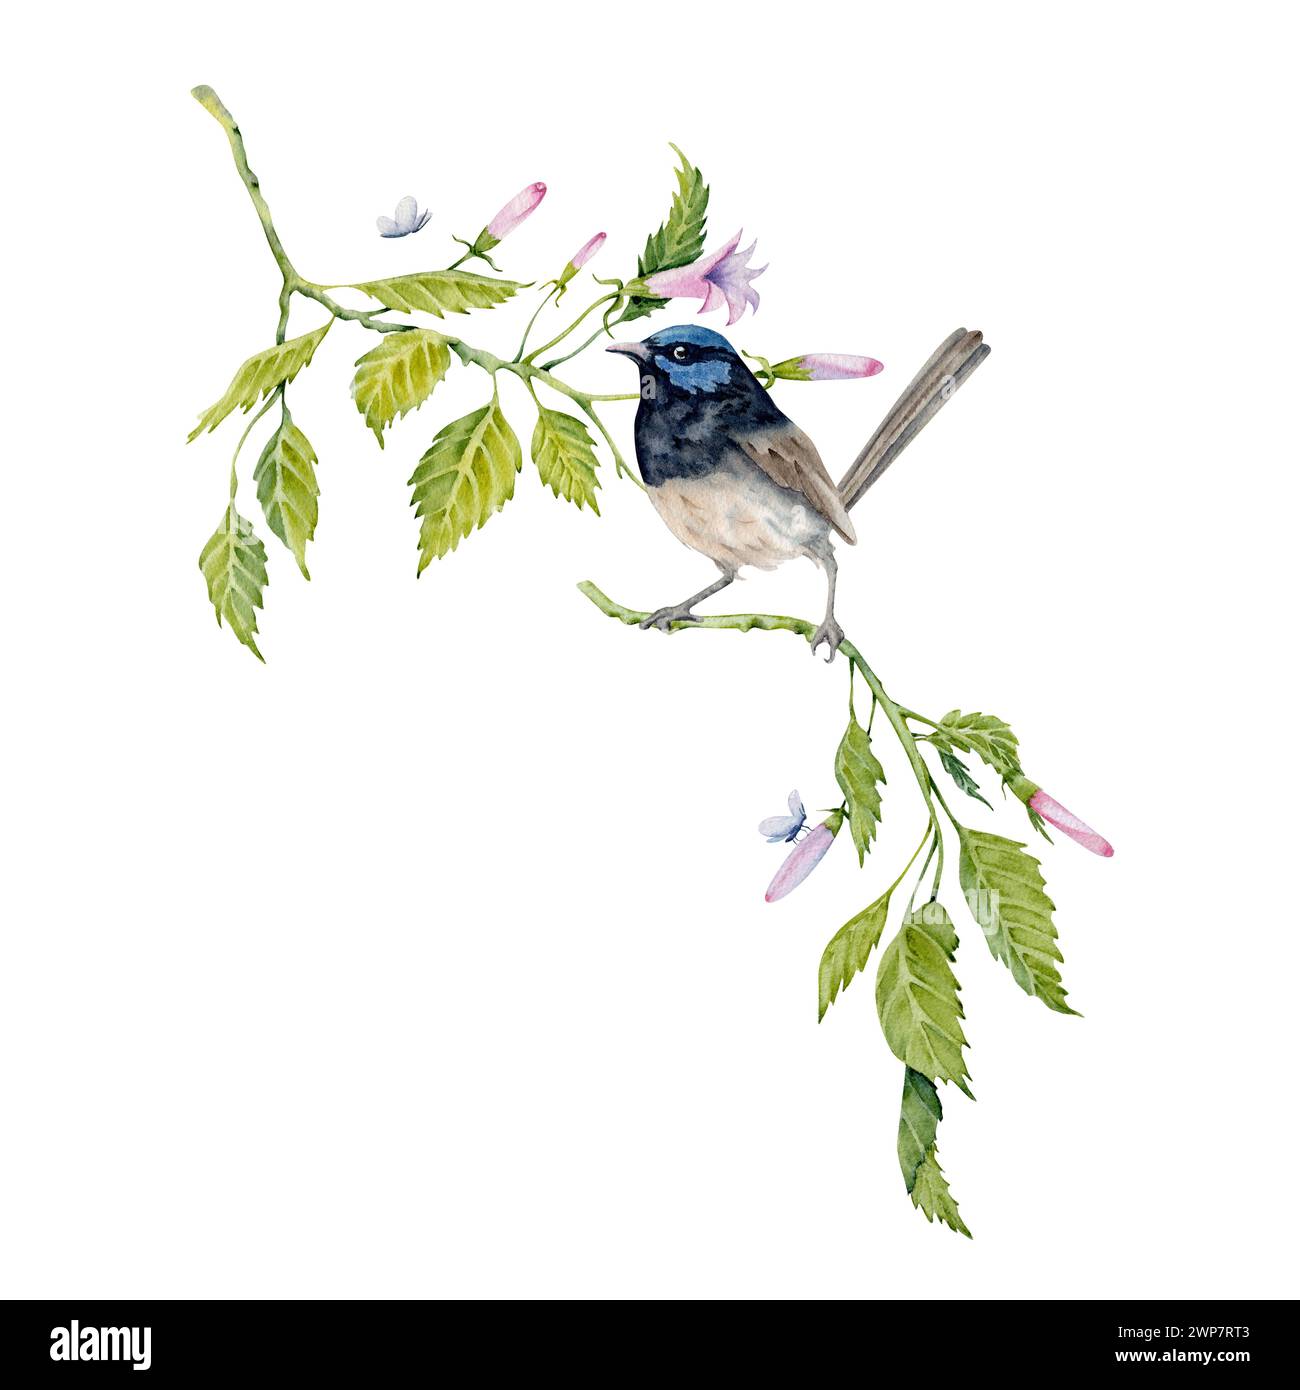 Composition d'aquarelle avec un oiseau de wren fée sur la branche verte. Élément peint à la main isolé sur fond blanc. Thé hibiscus floral, sirop, cosmétique Banque D'Images